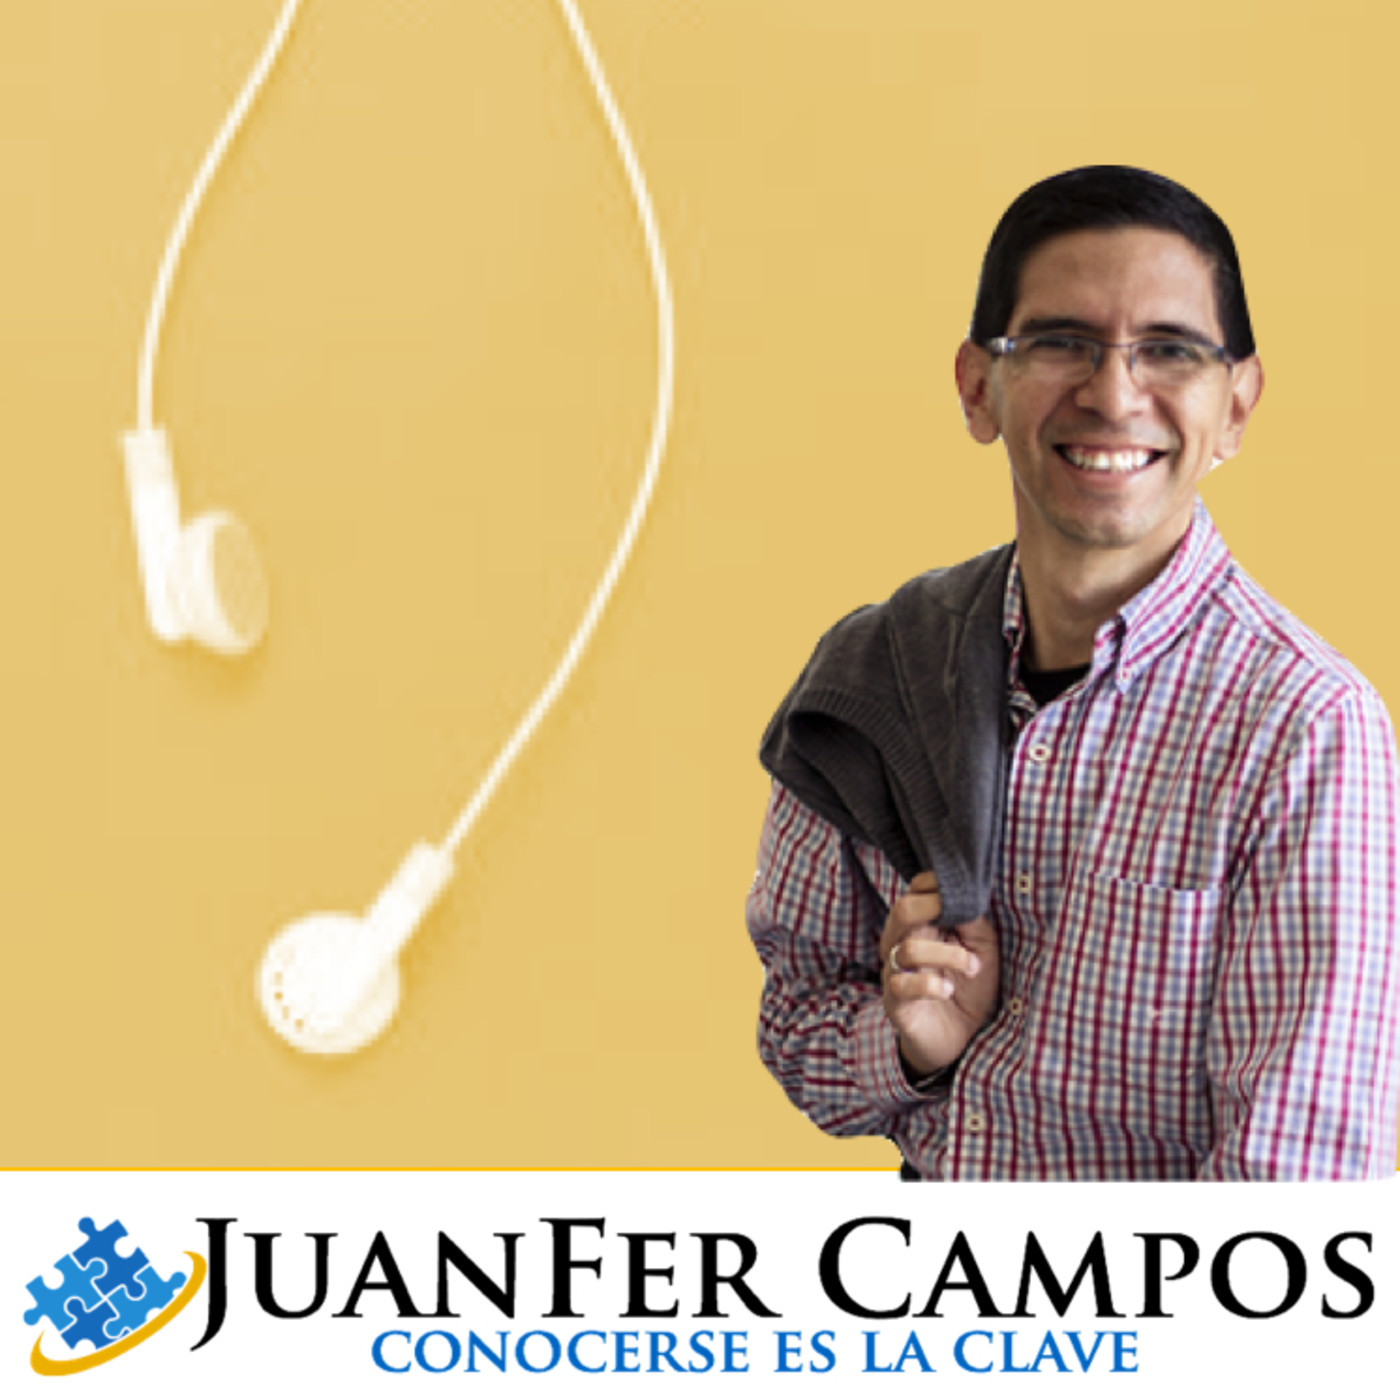 JuanFer Campos